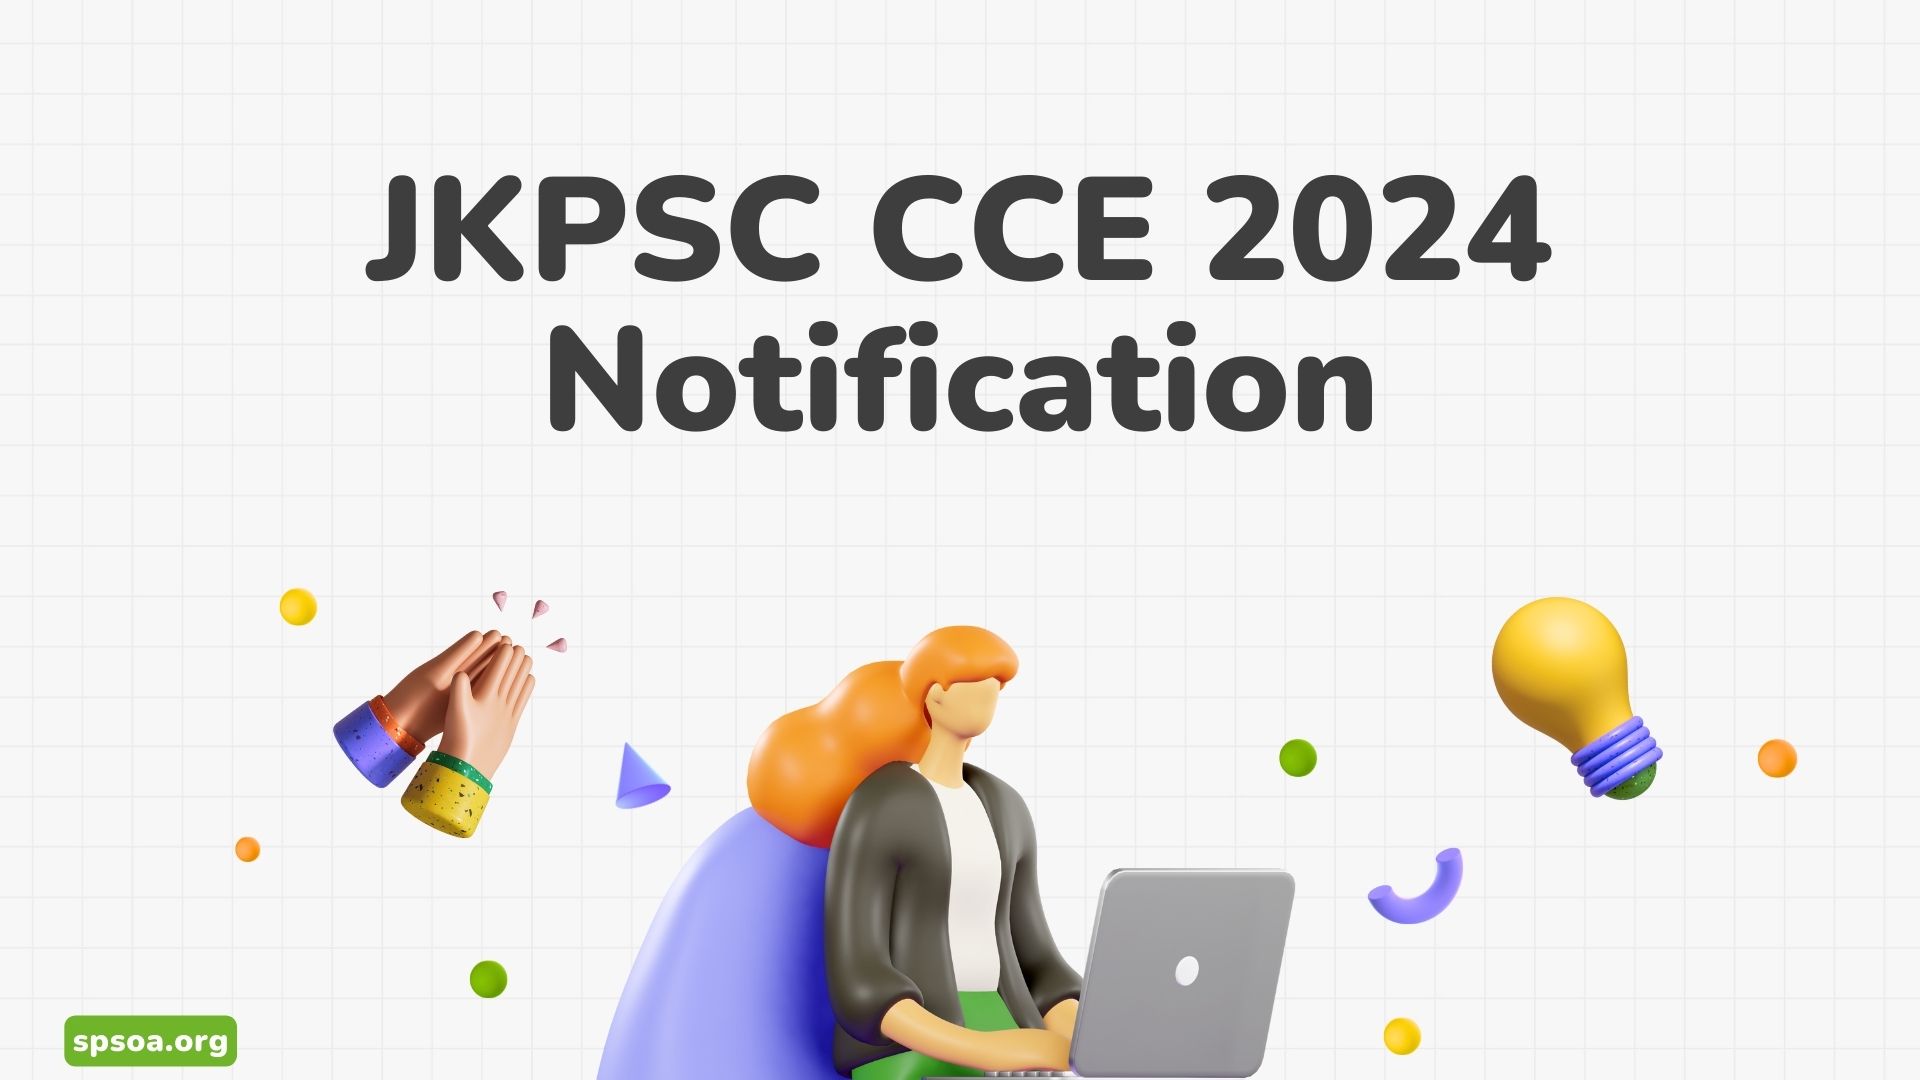 JKPSC CCE 2024 Notification